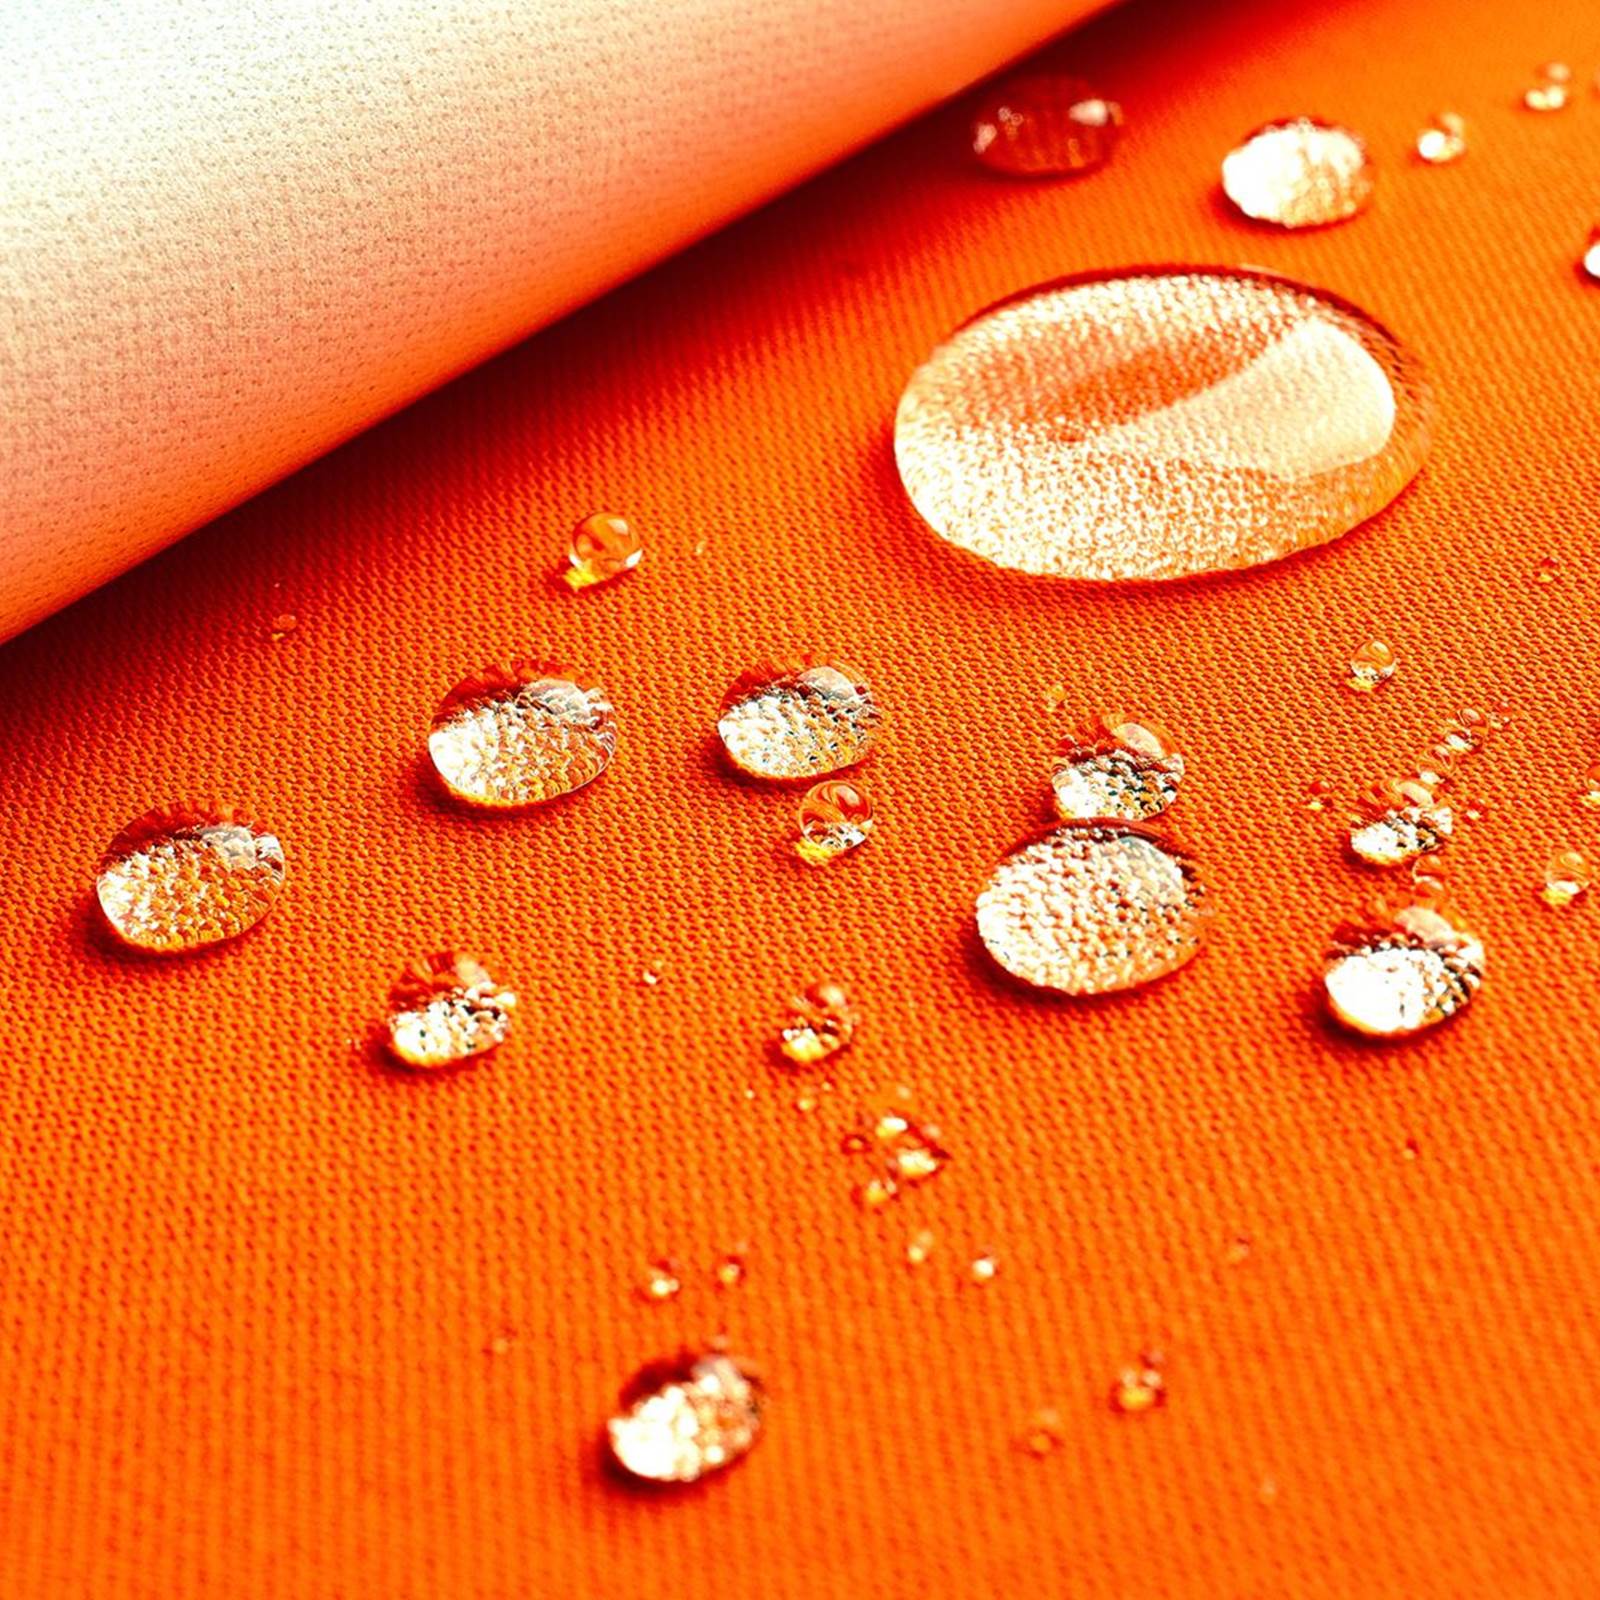 Greta - tissu supérieur laminé coupe-vent, imperméable, thermoactif - orange néon